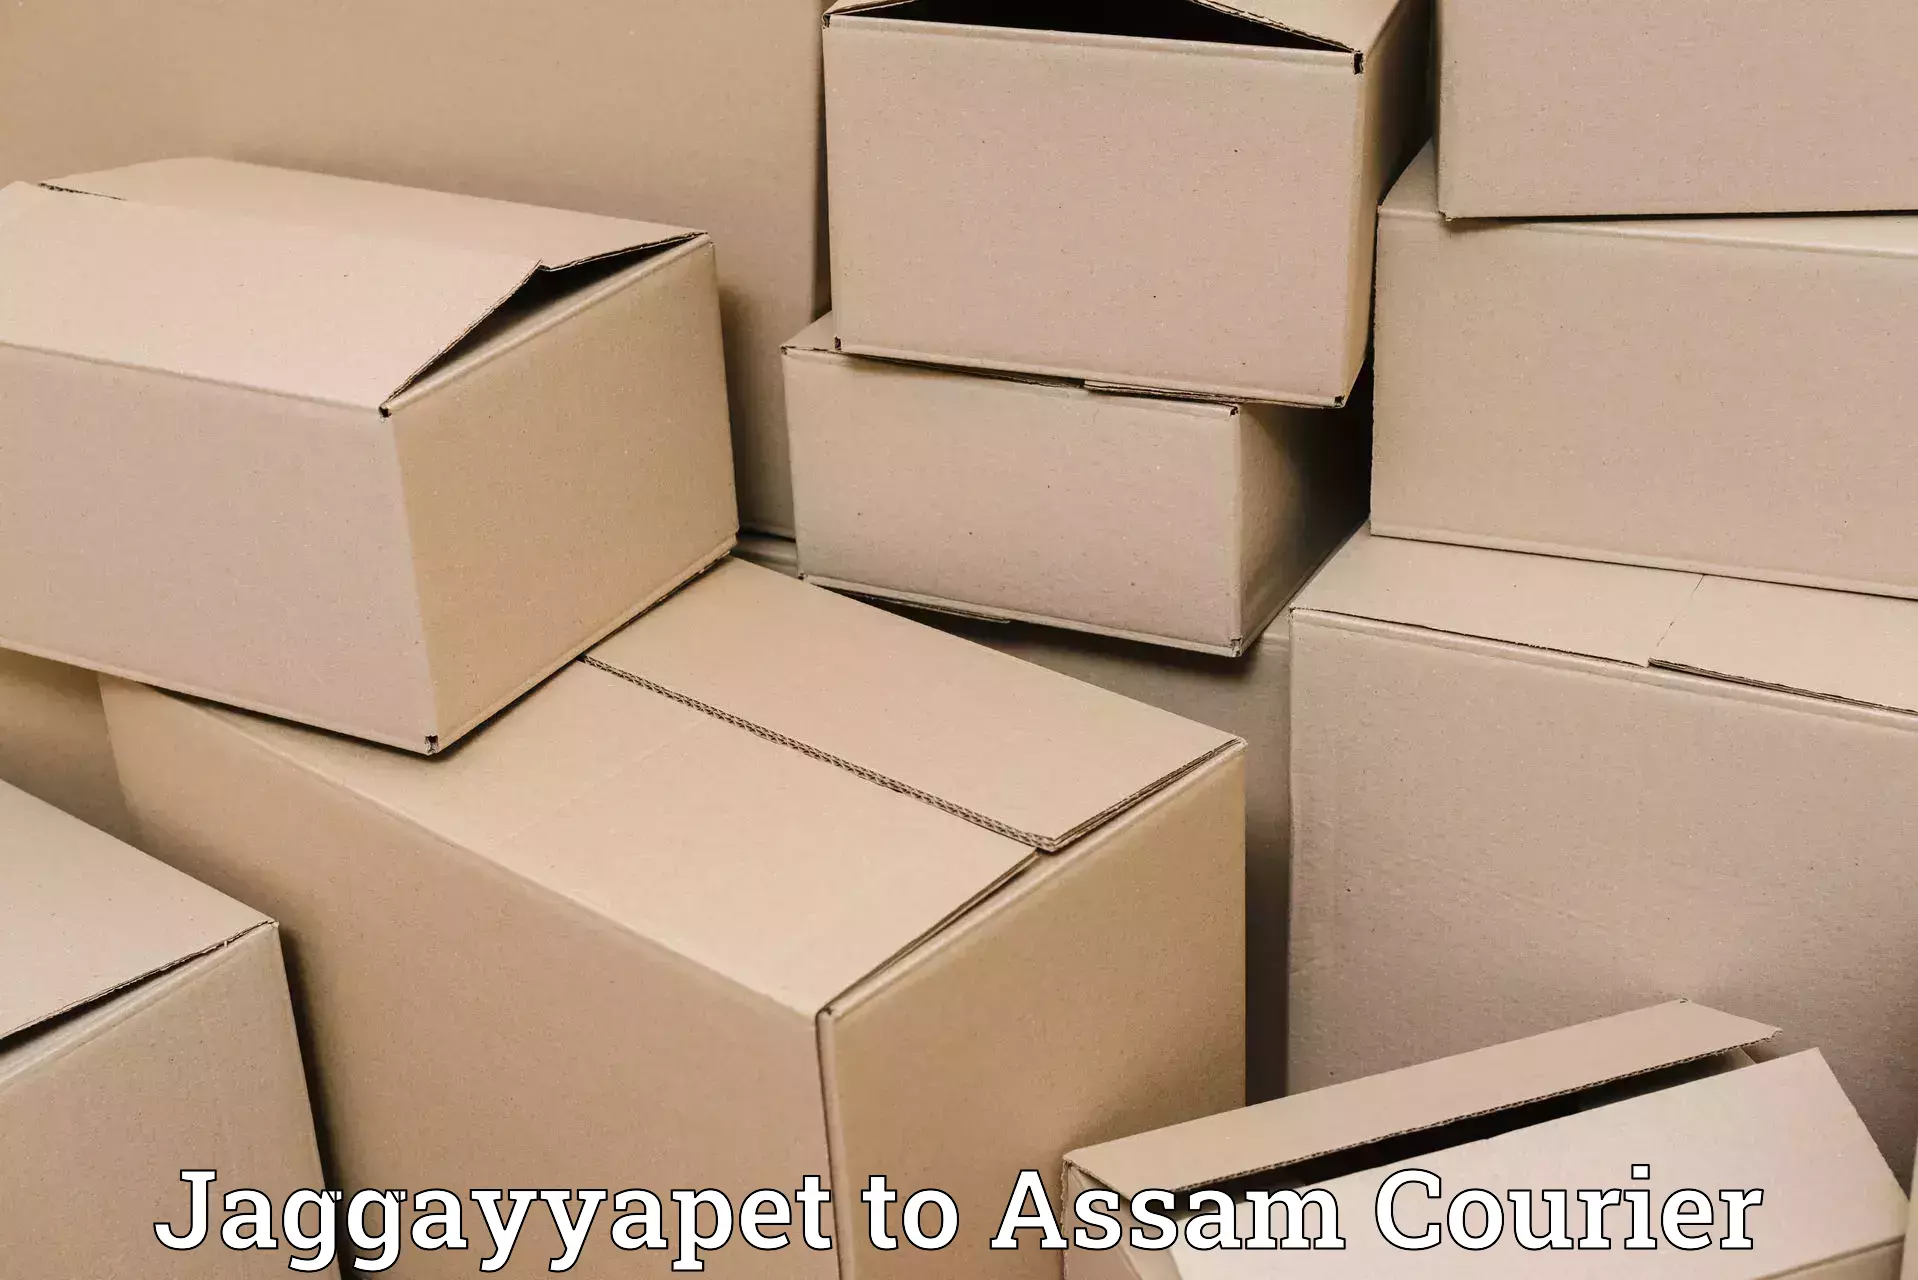 Logistics management Jaggayyapet to Lumding